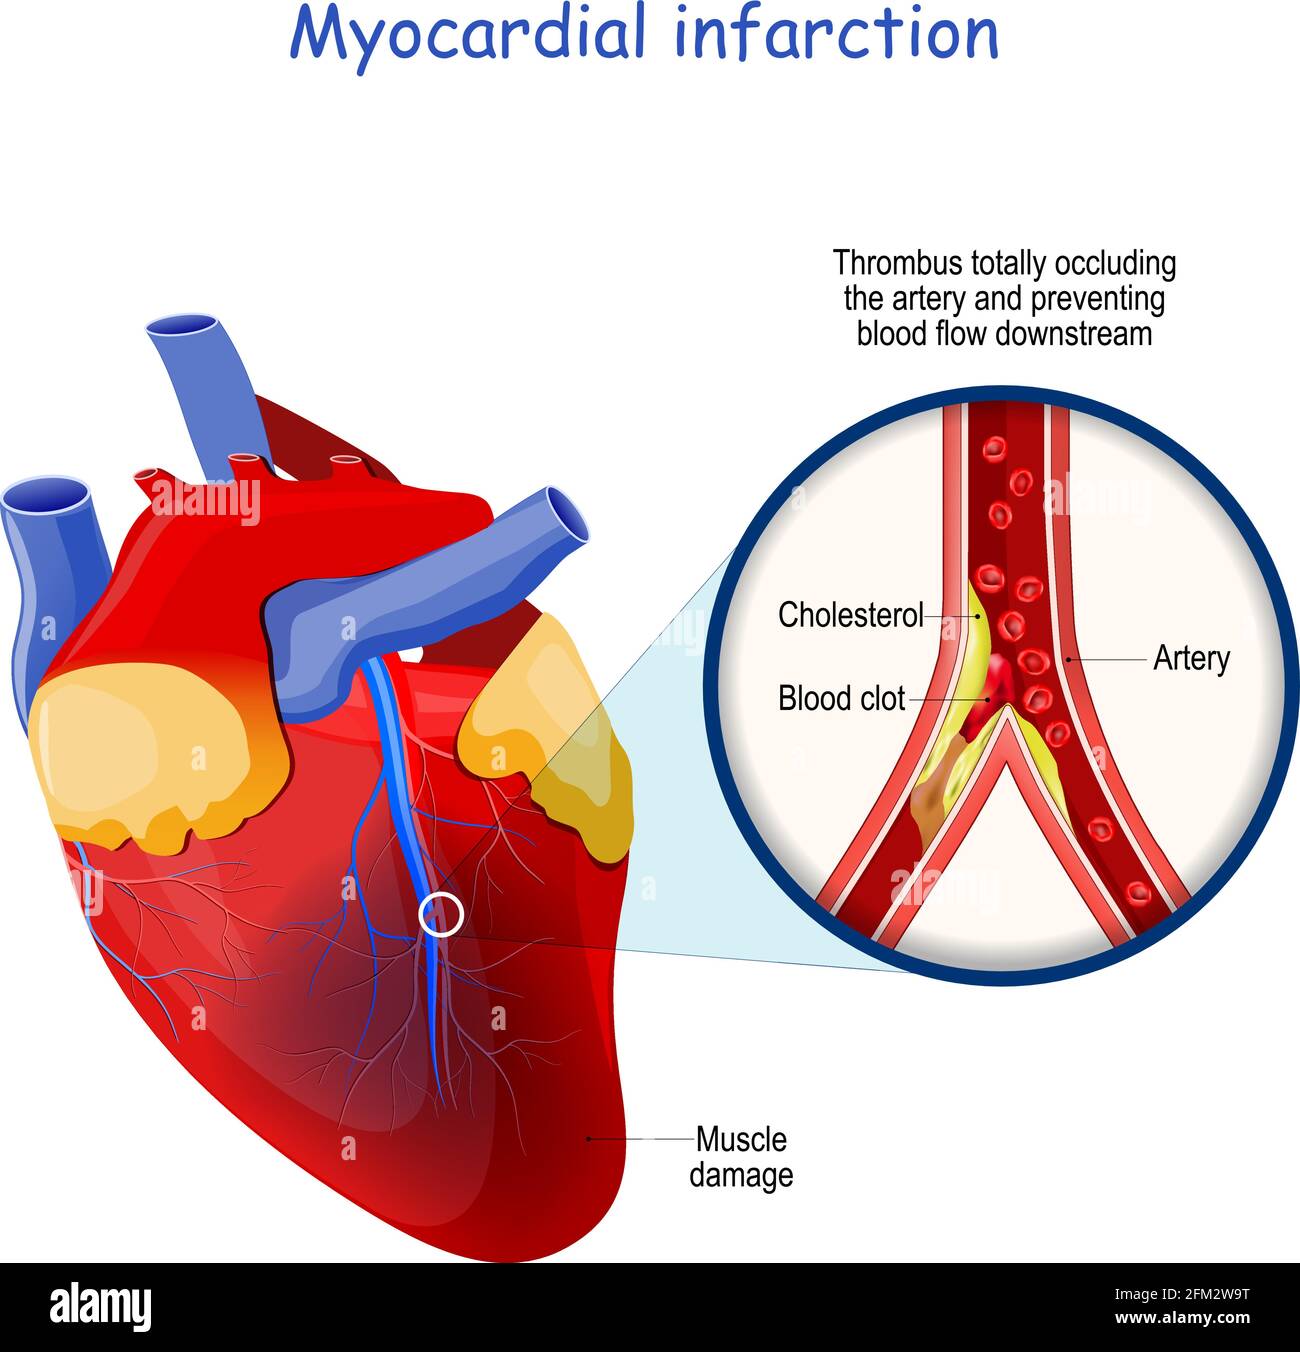 Infarto miocardico. Attacco cardiaco. Il trombo occlude completamente l'arteria e impedisce il flusso sanguigno a valle. Cuore con danni muscolari Illustrazione Vettoriale